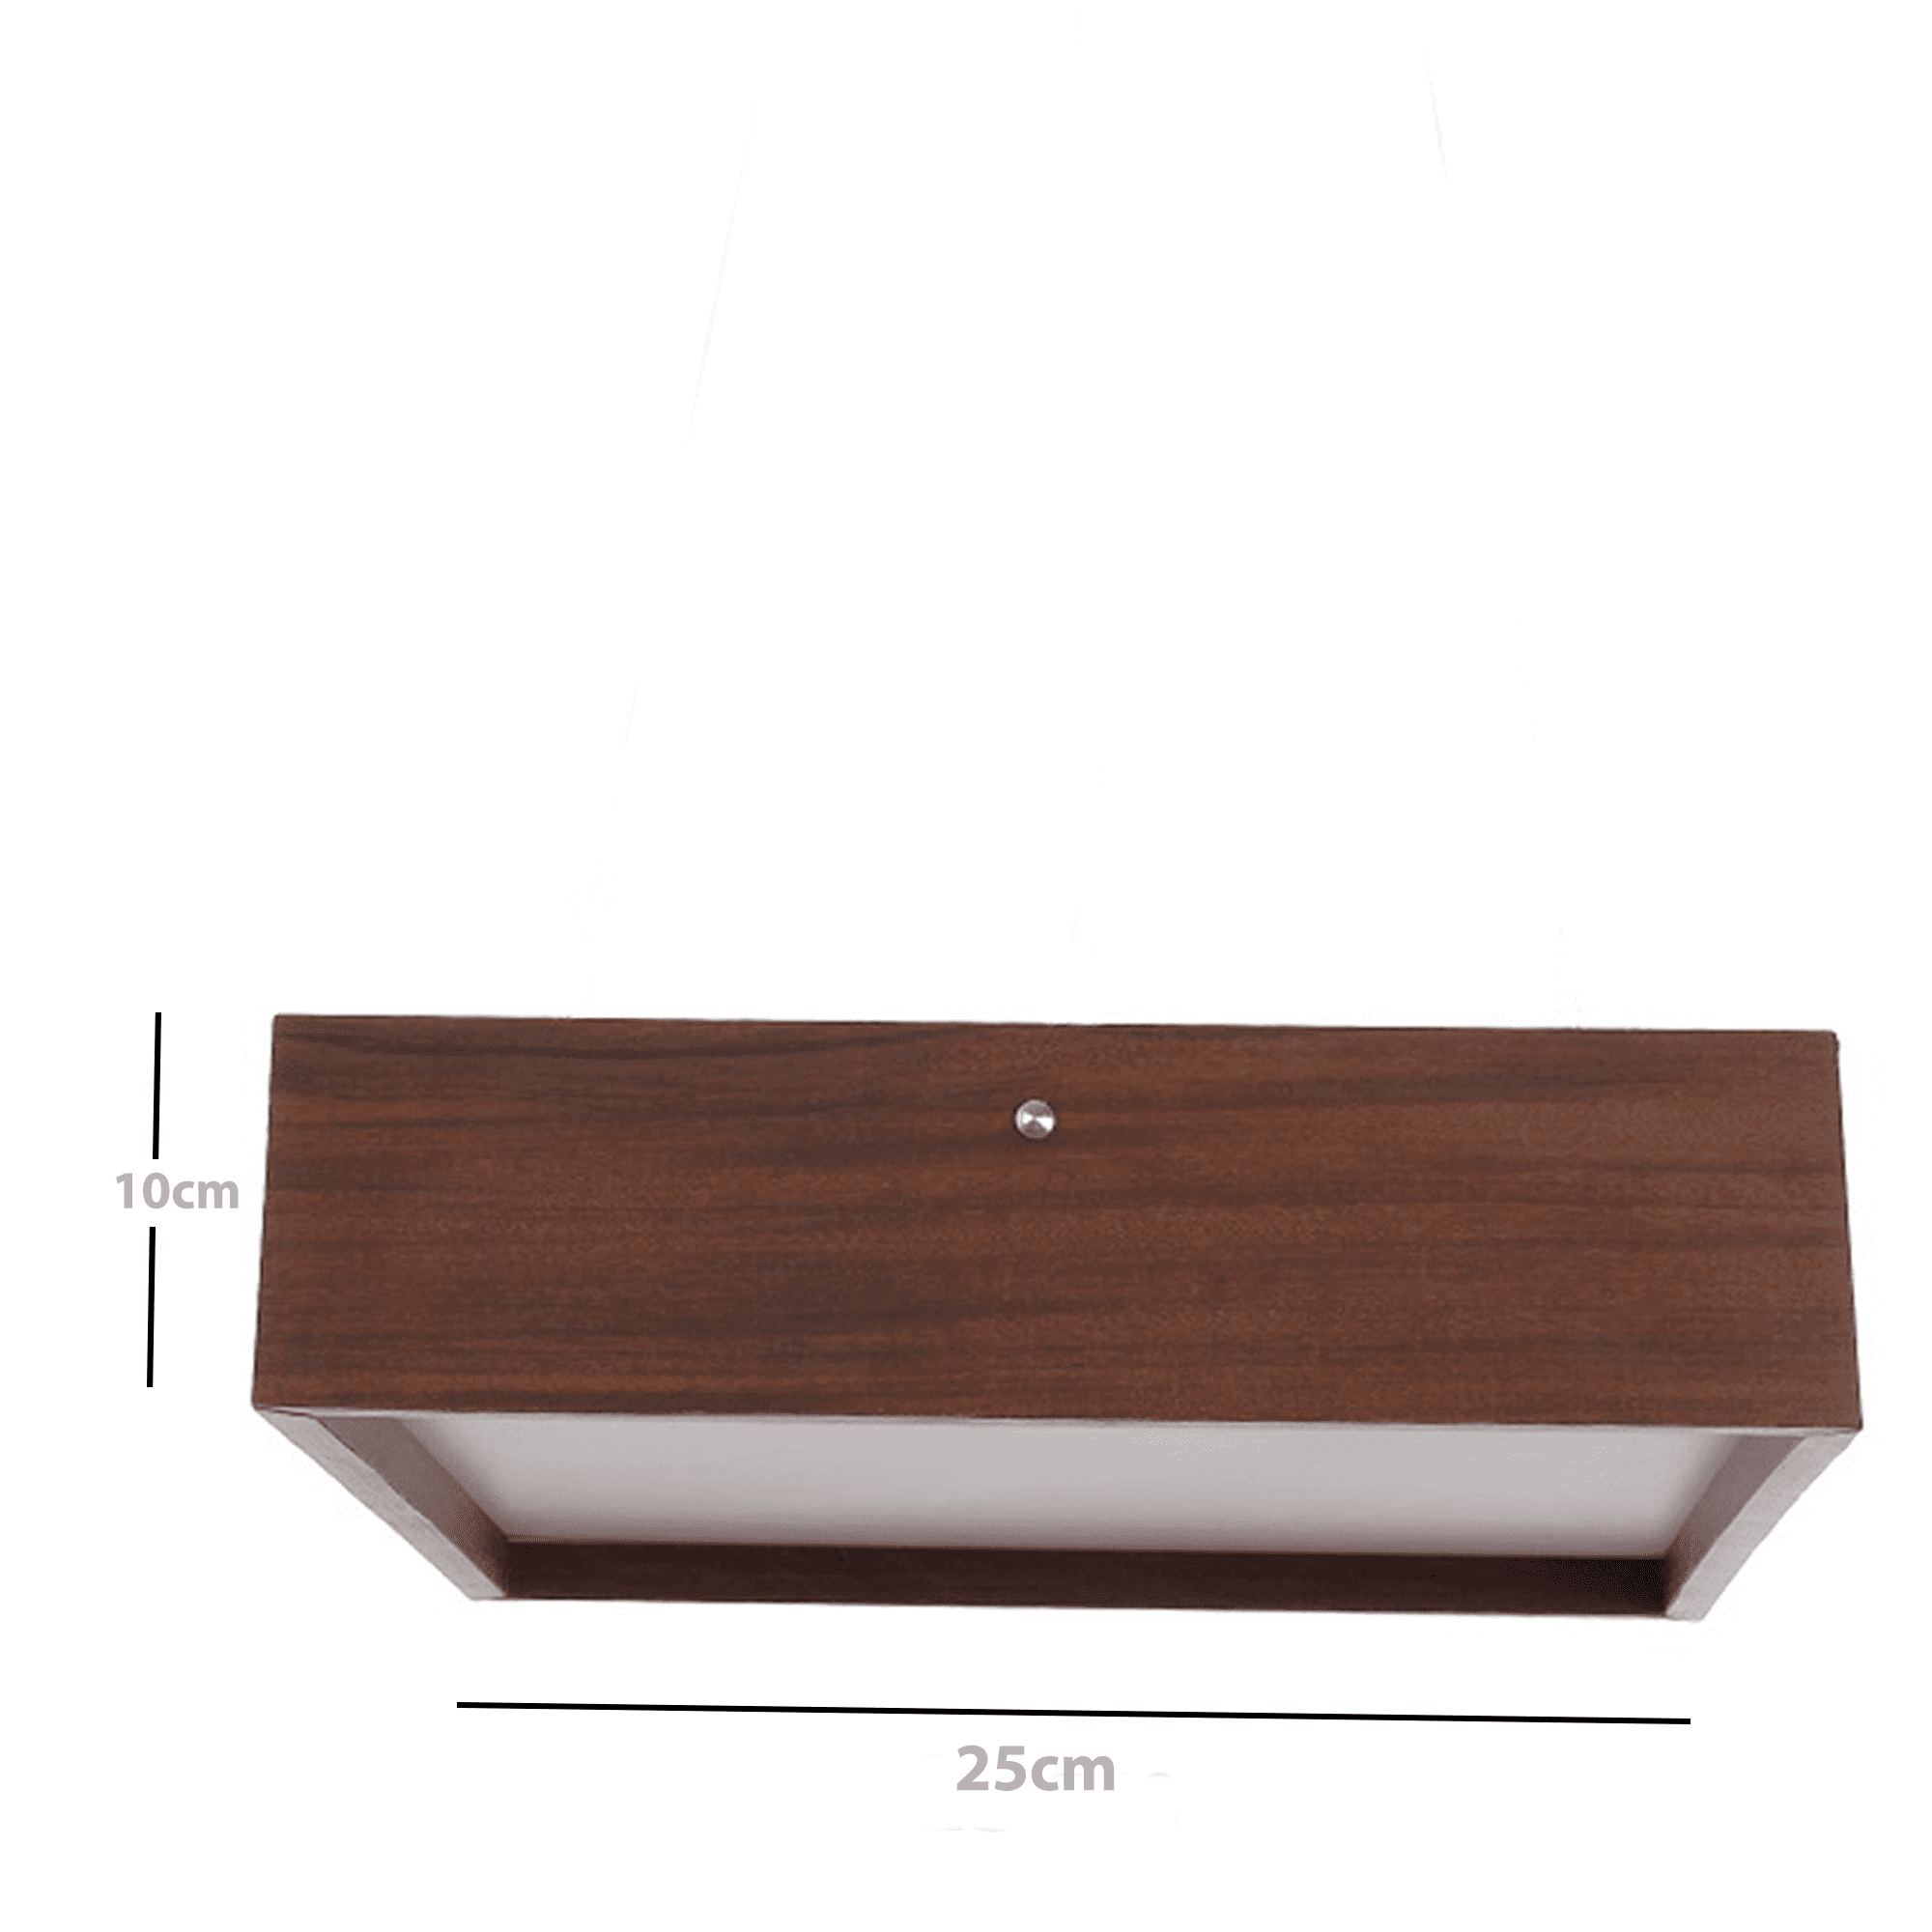 Plafon Madeira Wood Quadrado 25x25cm - 2 Luzes E27 - Freijó (claro) - 5